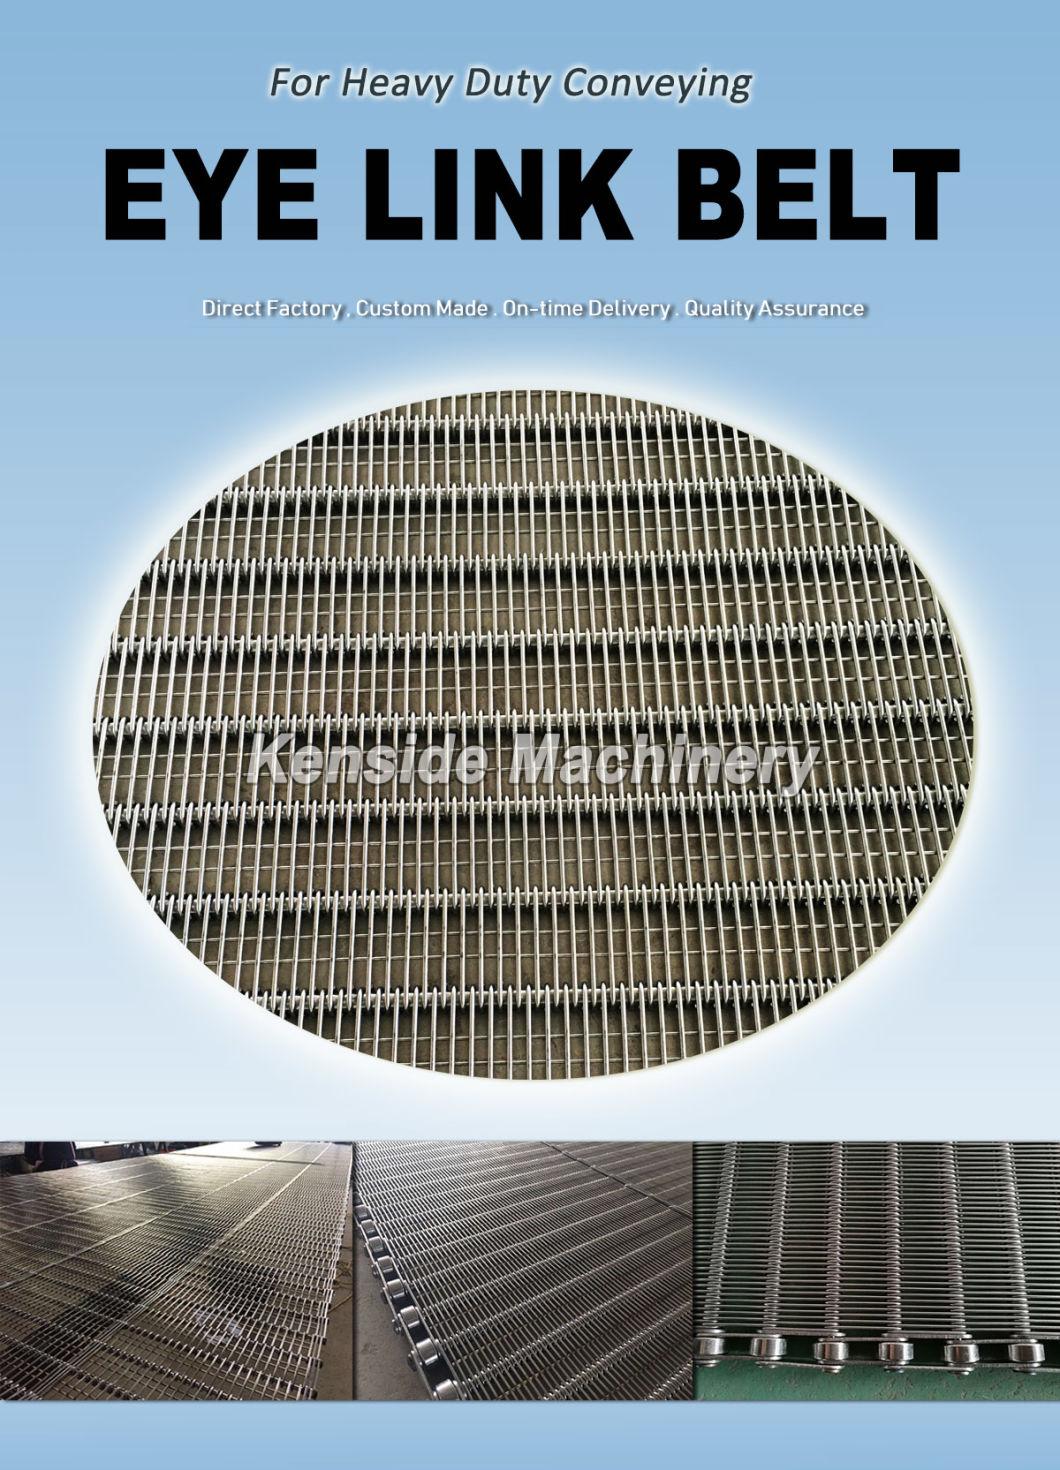 Eyelink Belts for Food Manufacturing